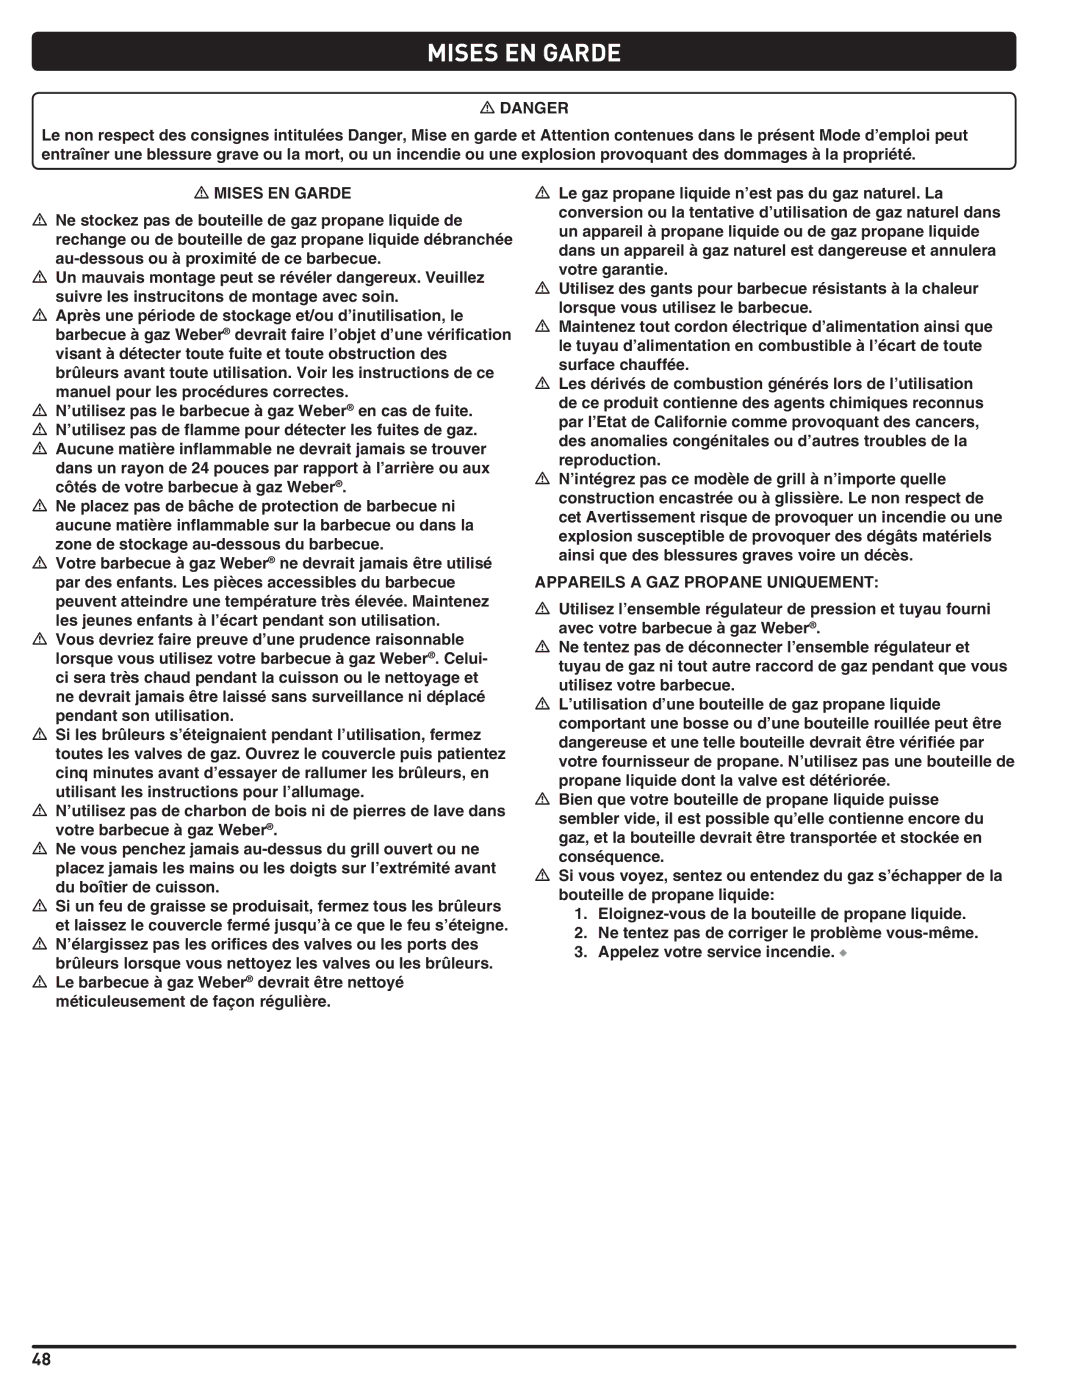 Summit 660-LP, 460-LP manual Mises EN Garde, Appareils a GAZ Propane Uniquement 